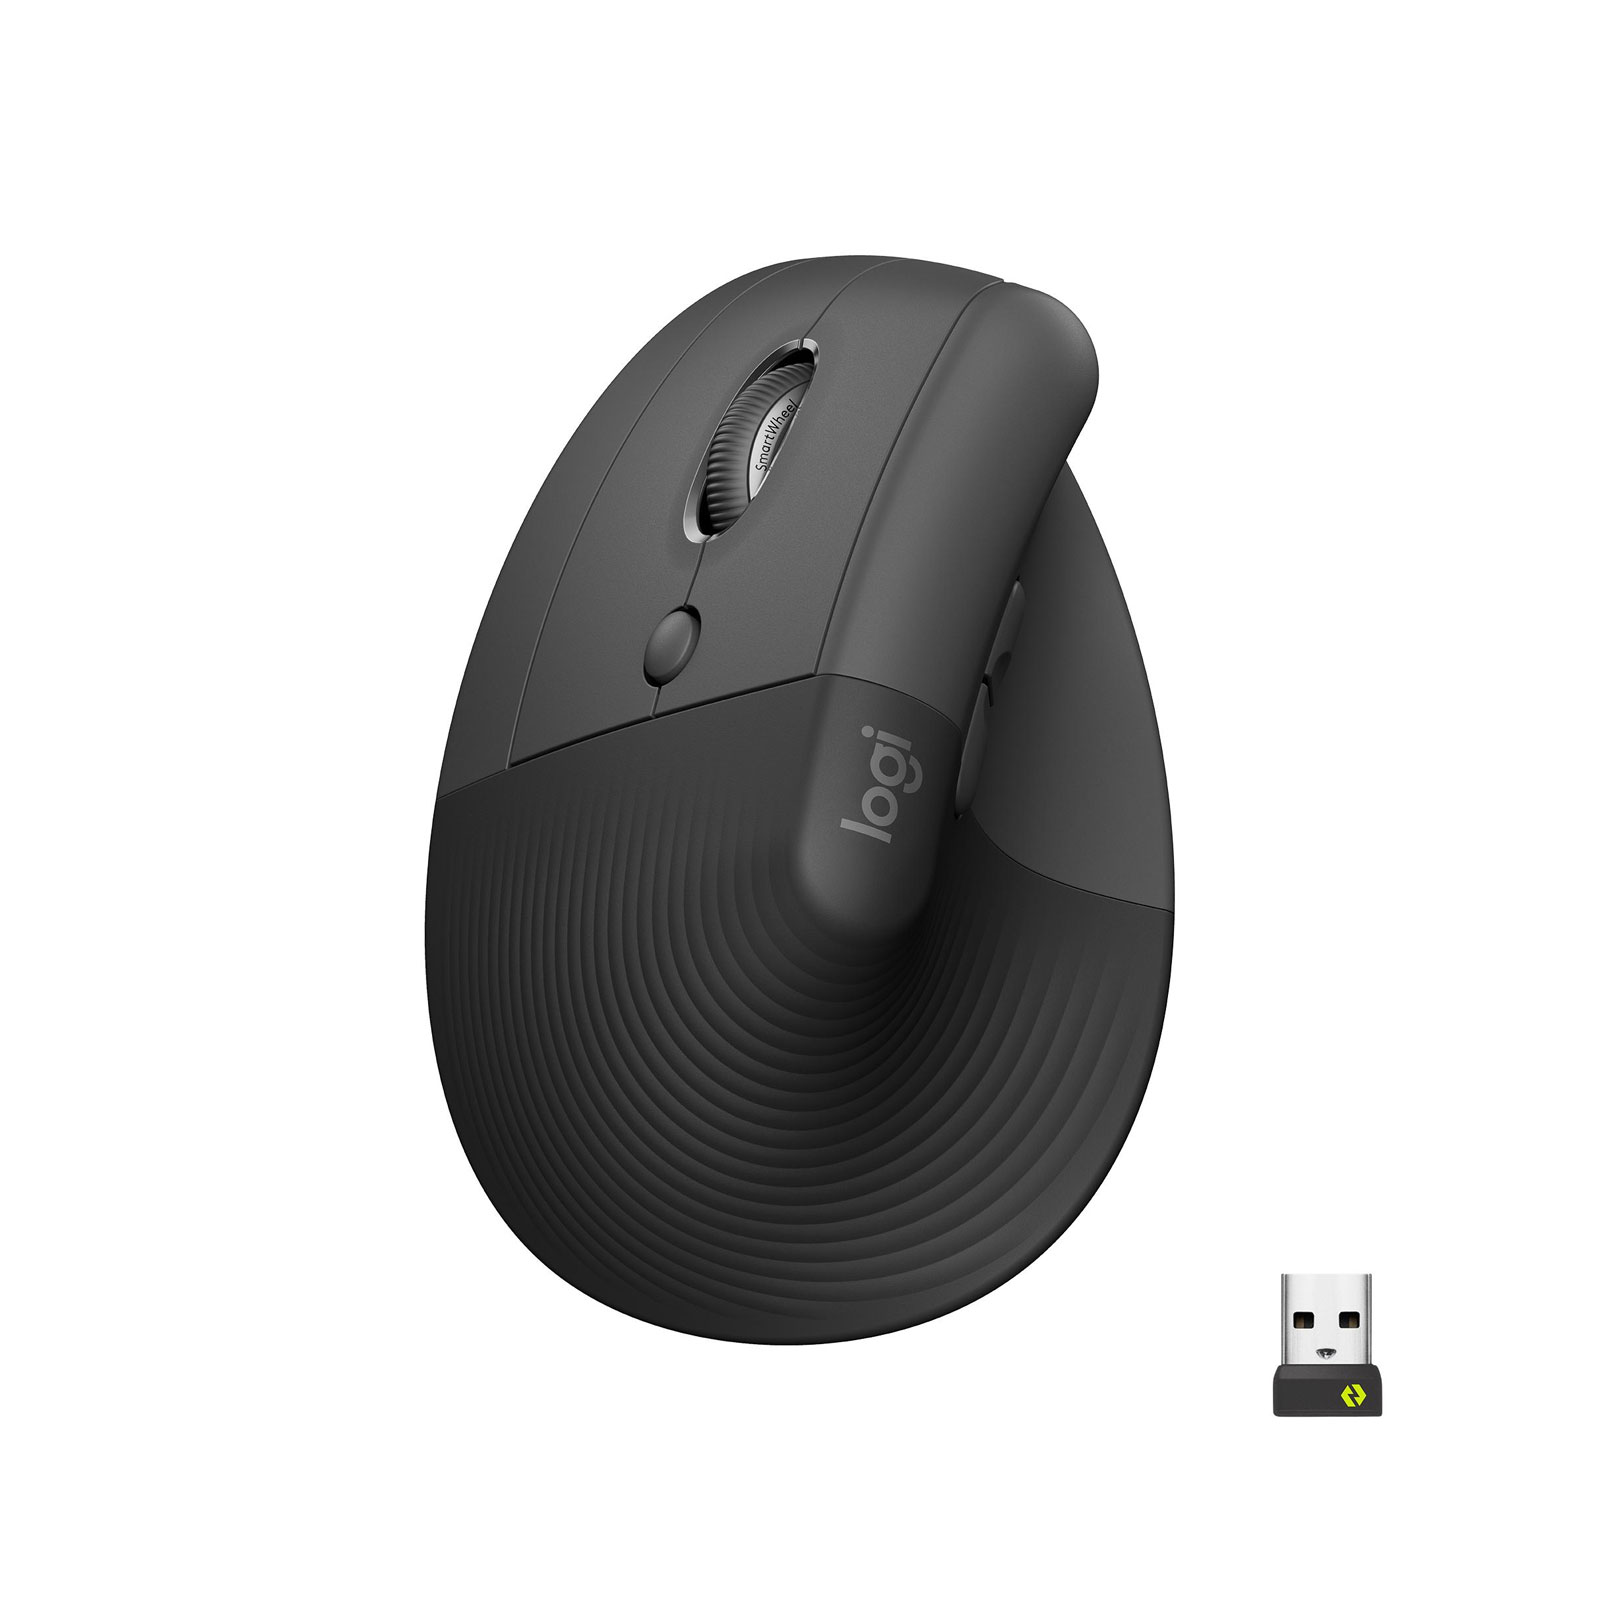 Logitech Lift - linkshändige vertikale ergonomische Maus, Grafit (Bluetooth, kabellos)